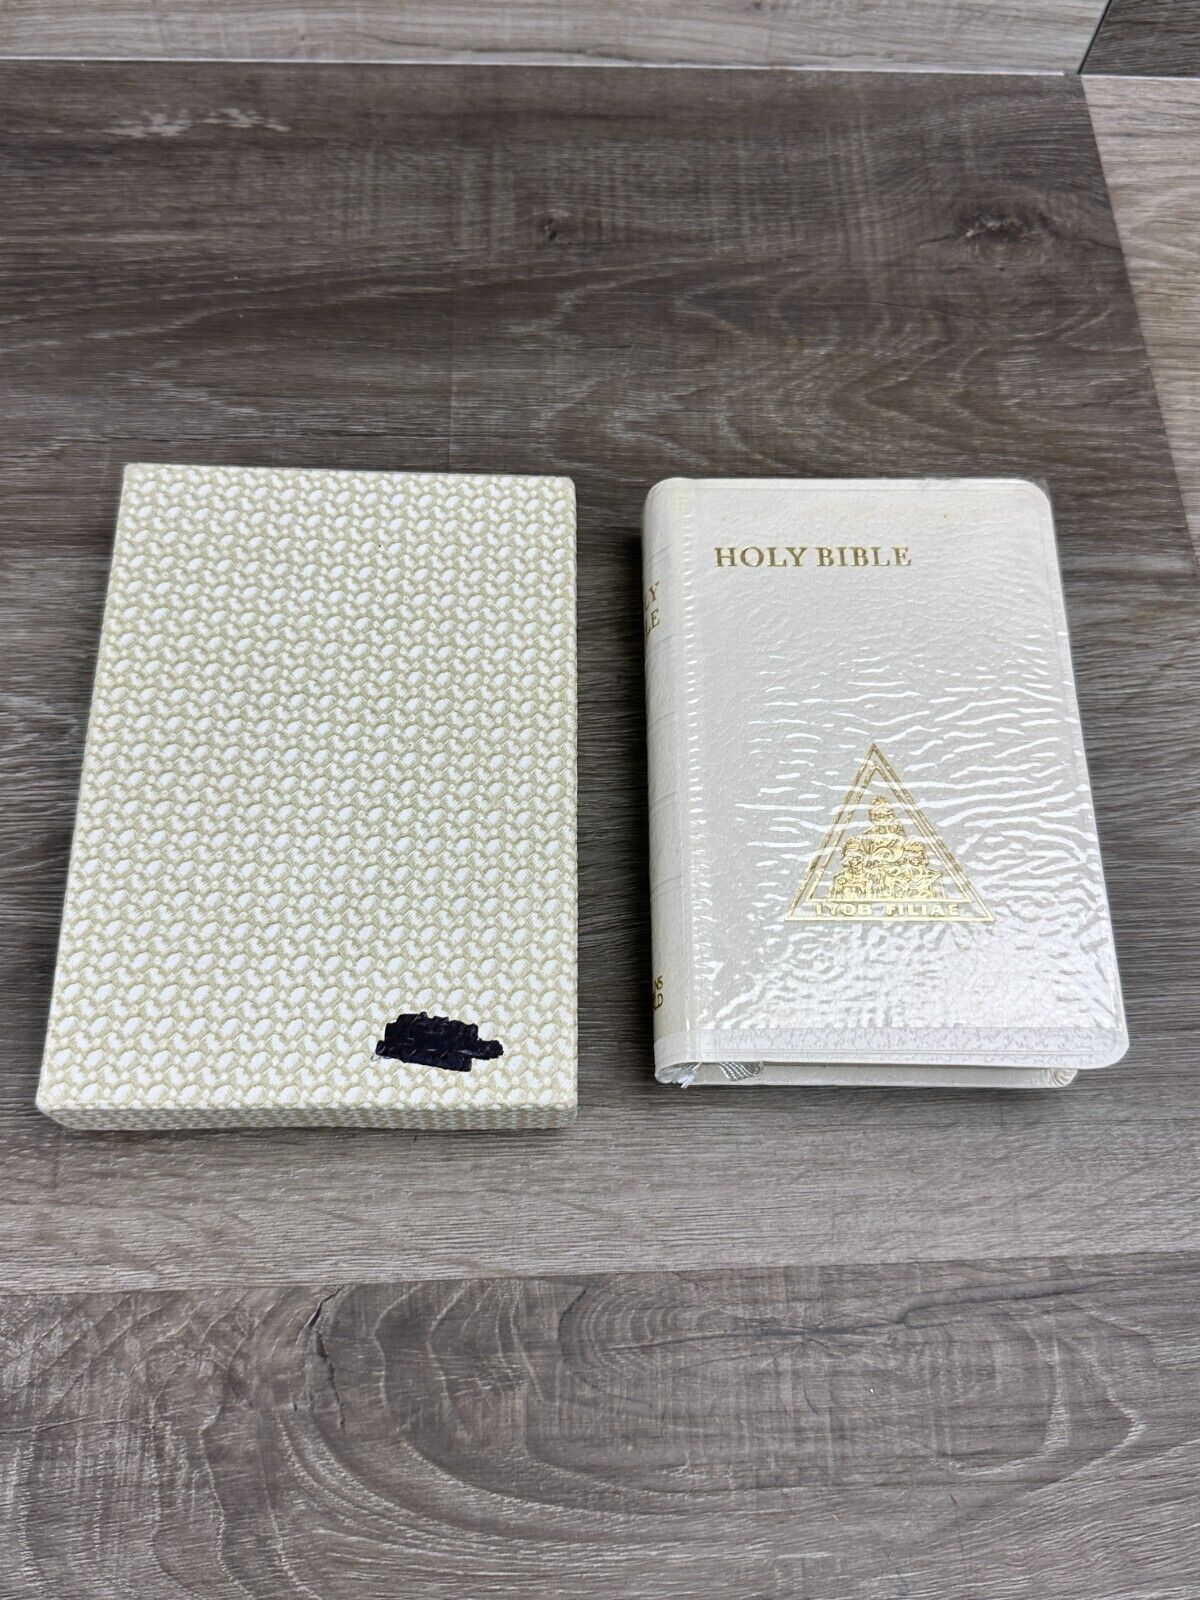 Vintage White Leather Hoy Bible Gold Edges IYOB FILIAE w/ Box 4x6